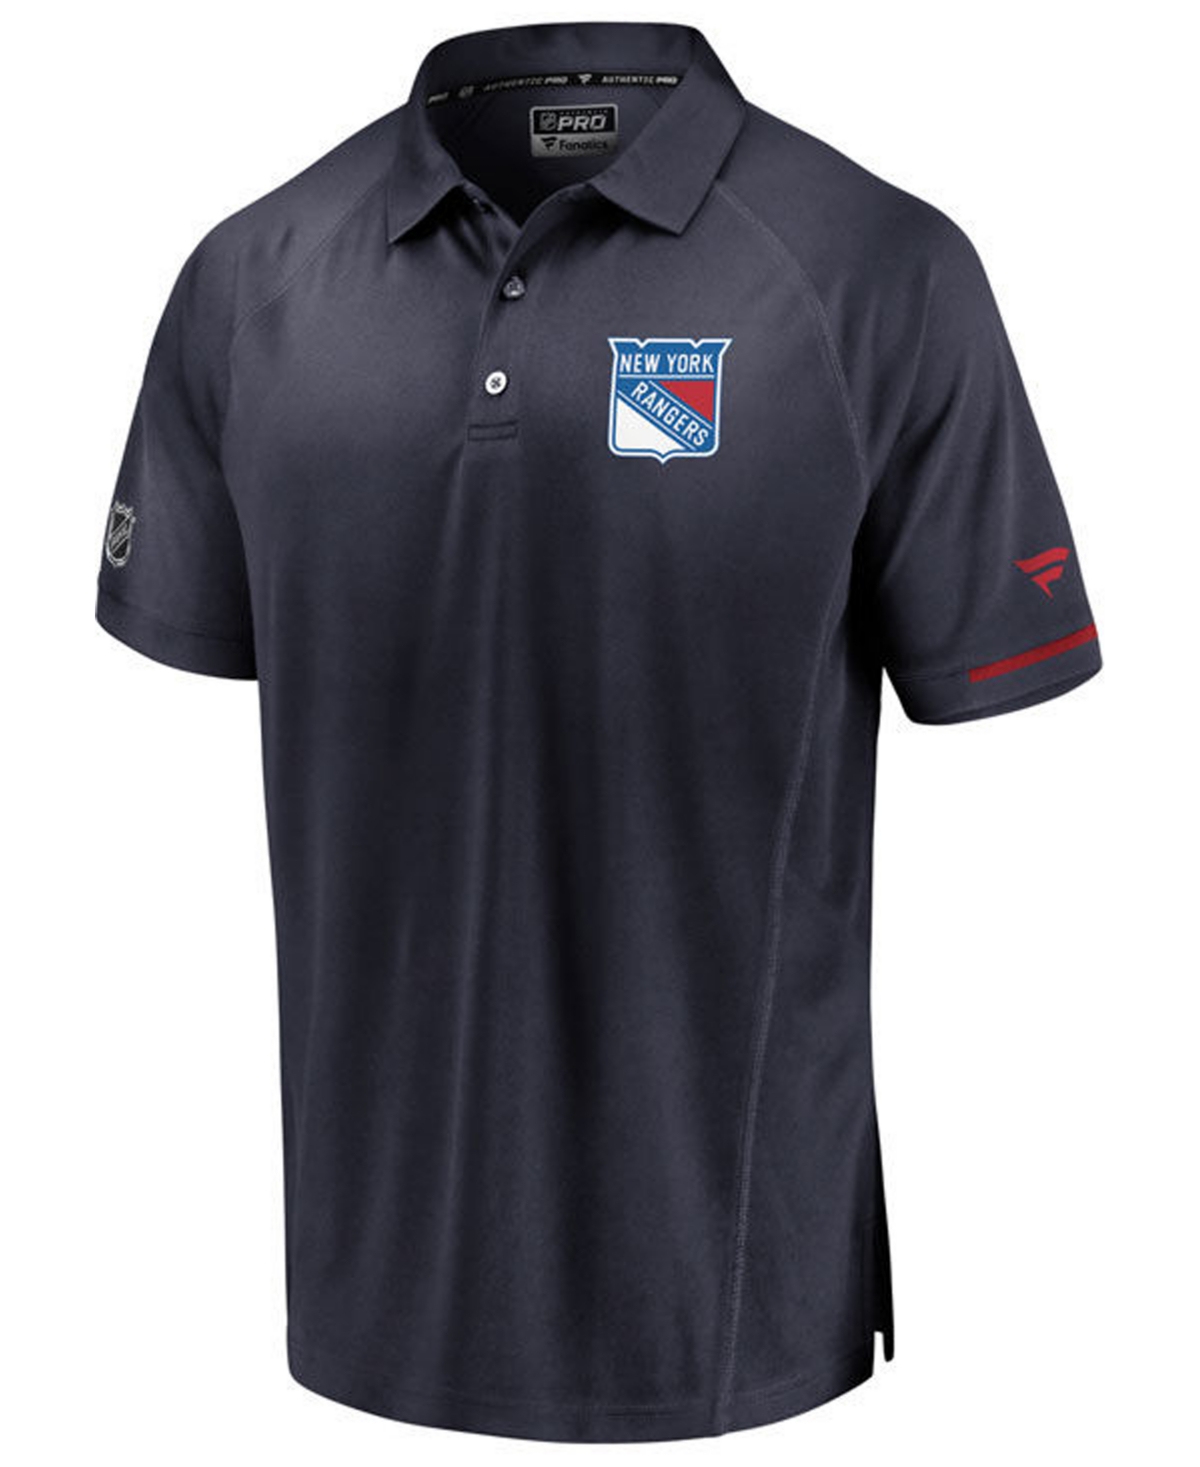 Men's New York Rangers Rinkside Pro Polo - Navy/Red